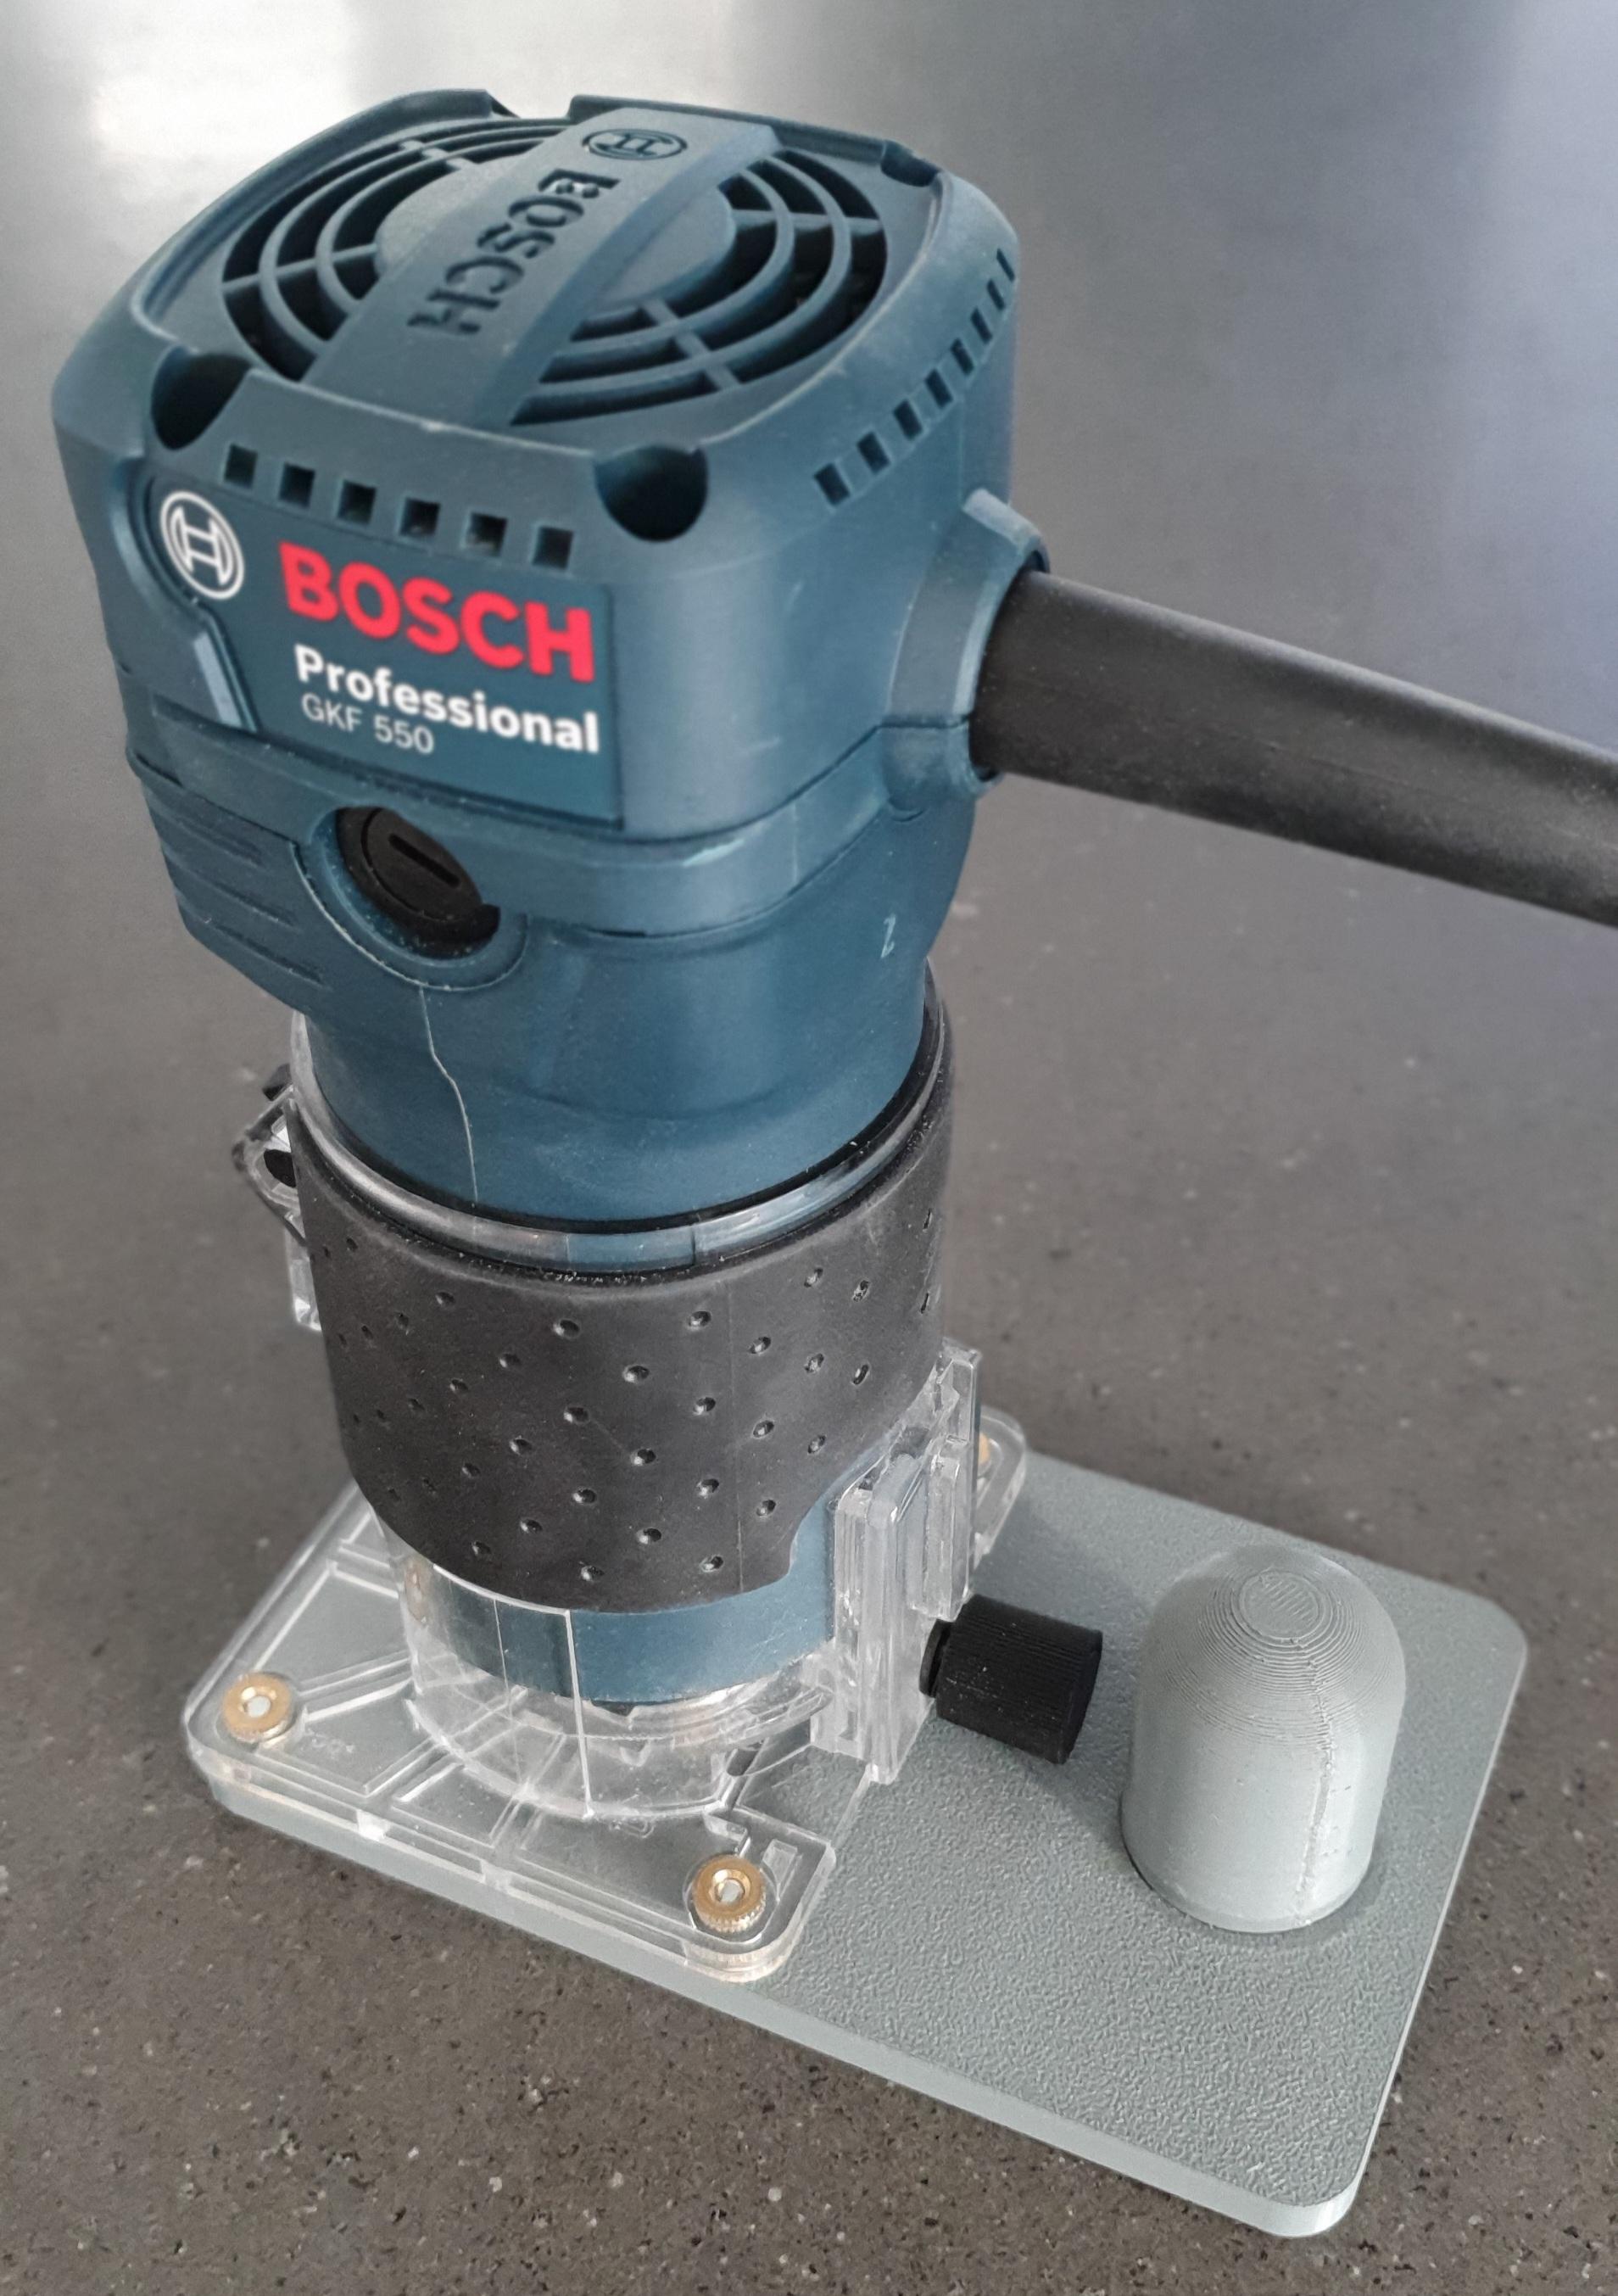 Bosch GKF 550 Grundplatte 3d model